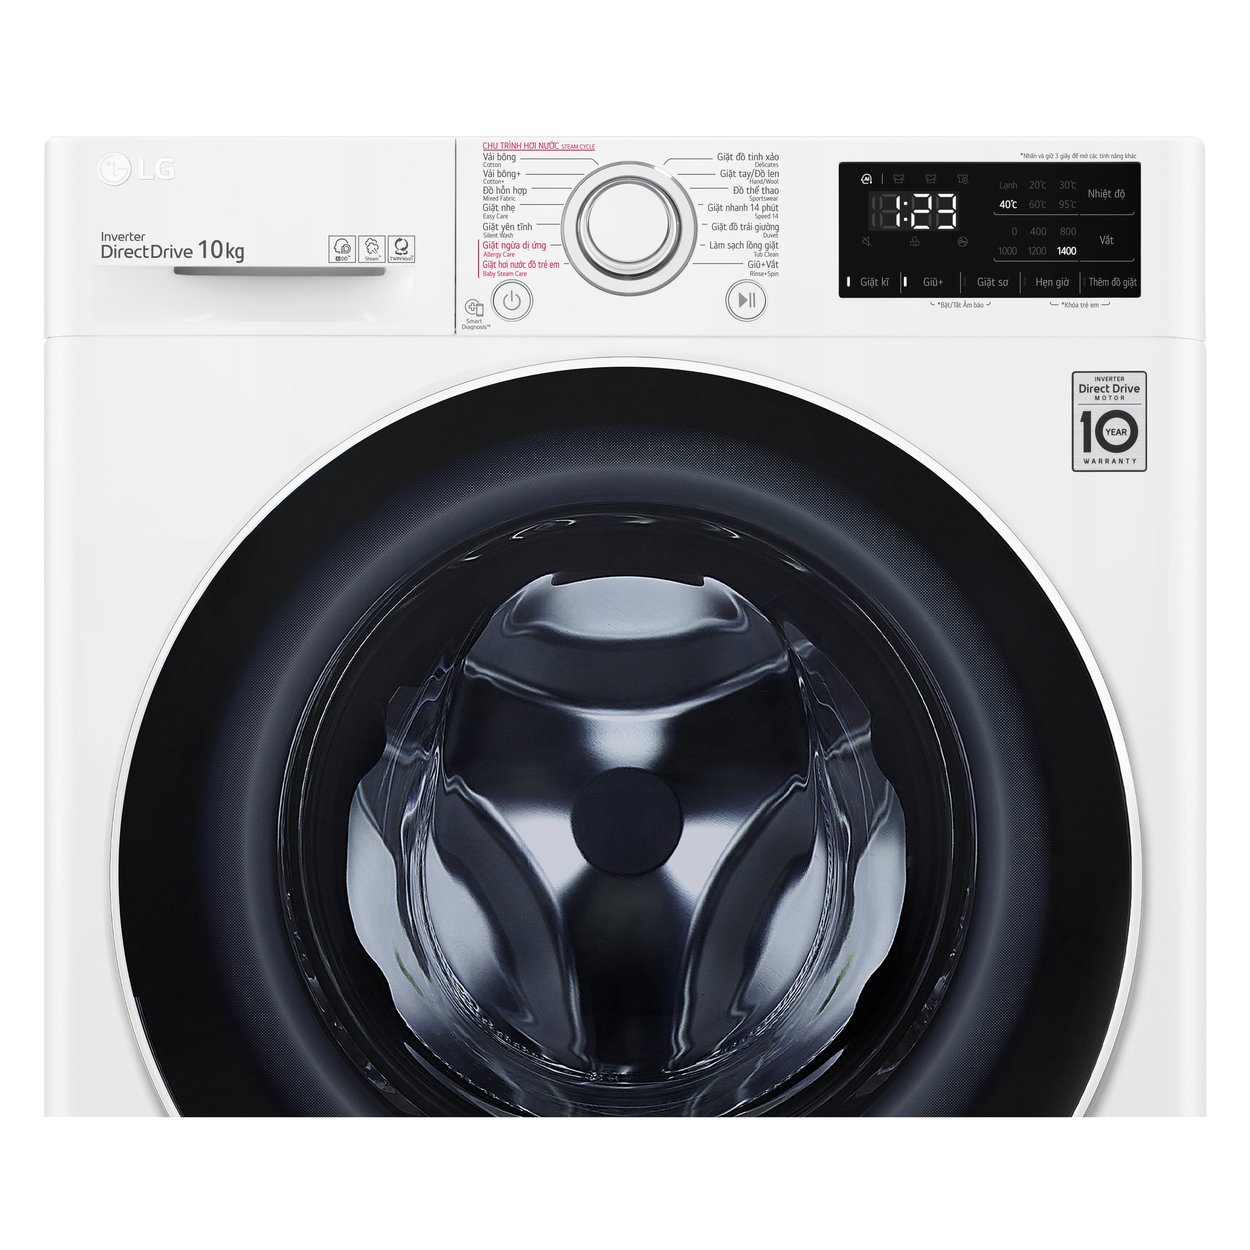 Máy giặt lồng ngang thông minh LG AI DD 10kg FV1410S5W